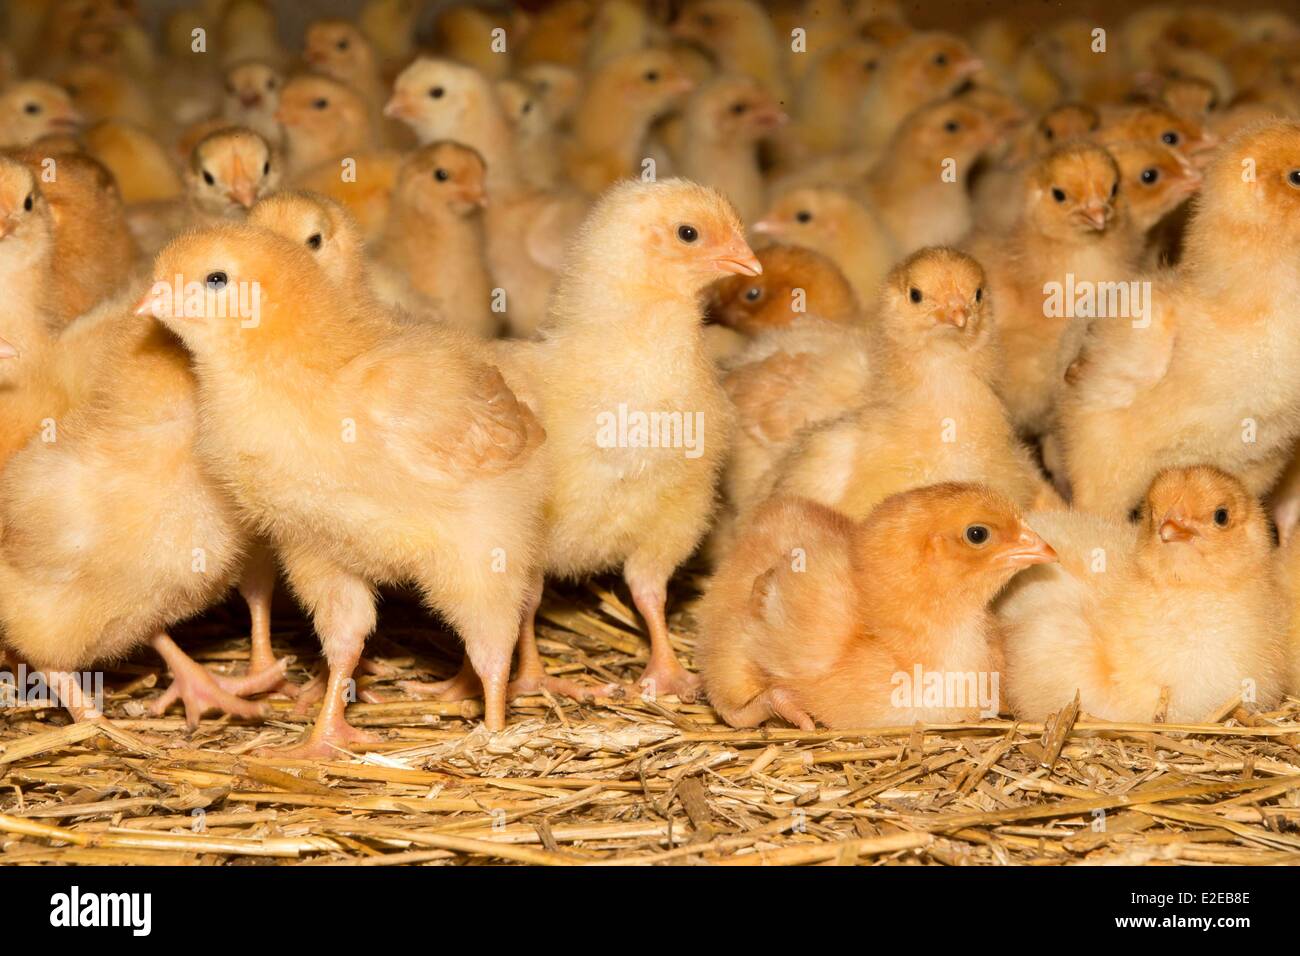 Francia, Bas Rhin, Siegen, la avicultura, la cría de pollos de engorde Foto de stock